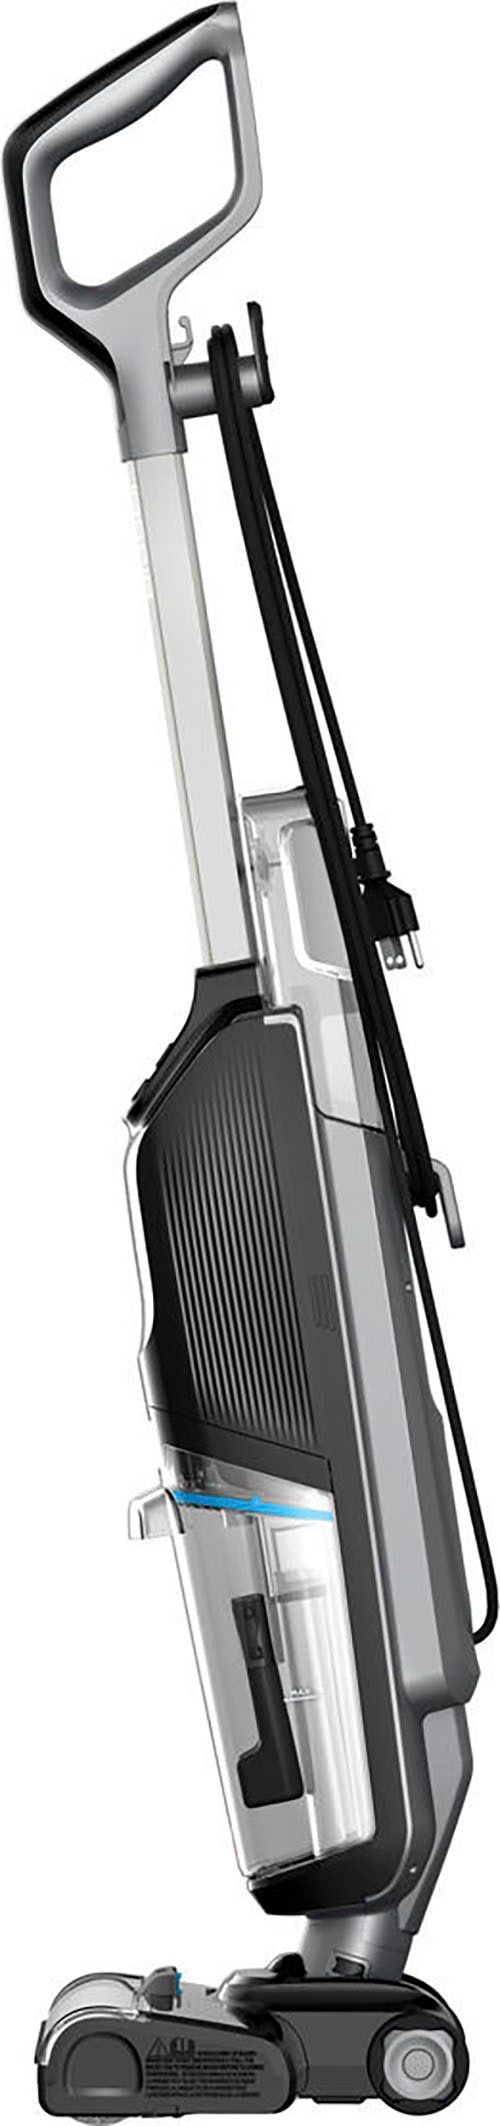 Bissell Nass-Trocken-Sauger »3847N, CrossWave® HF2 Select, leicht, einfach steuerbar«, für Hartböden, Dual-Tank, saugt & wischt gleichzeitig, Selbstreinigung